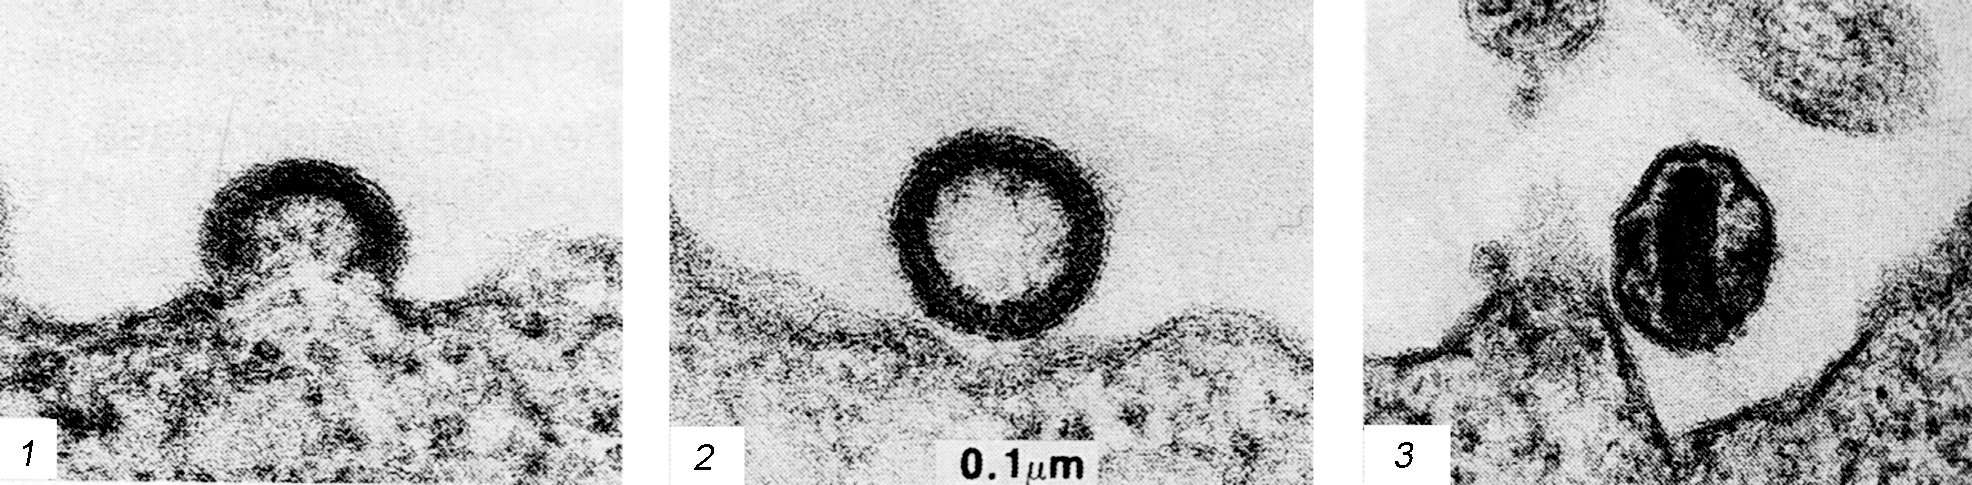 Рис. 1. Электронограммы, демонстрирующие последовательные стадии сборки и почкования ВИЧ. В зрелом вирионе сердцевина имеет коническую форму